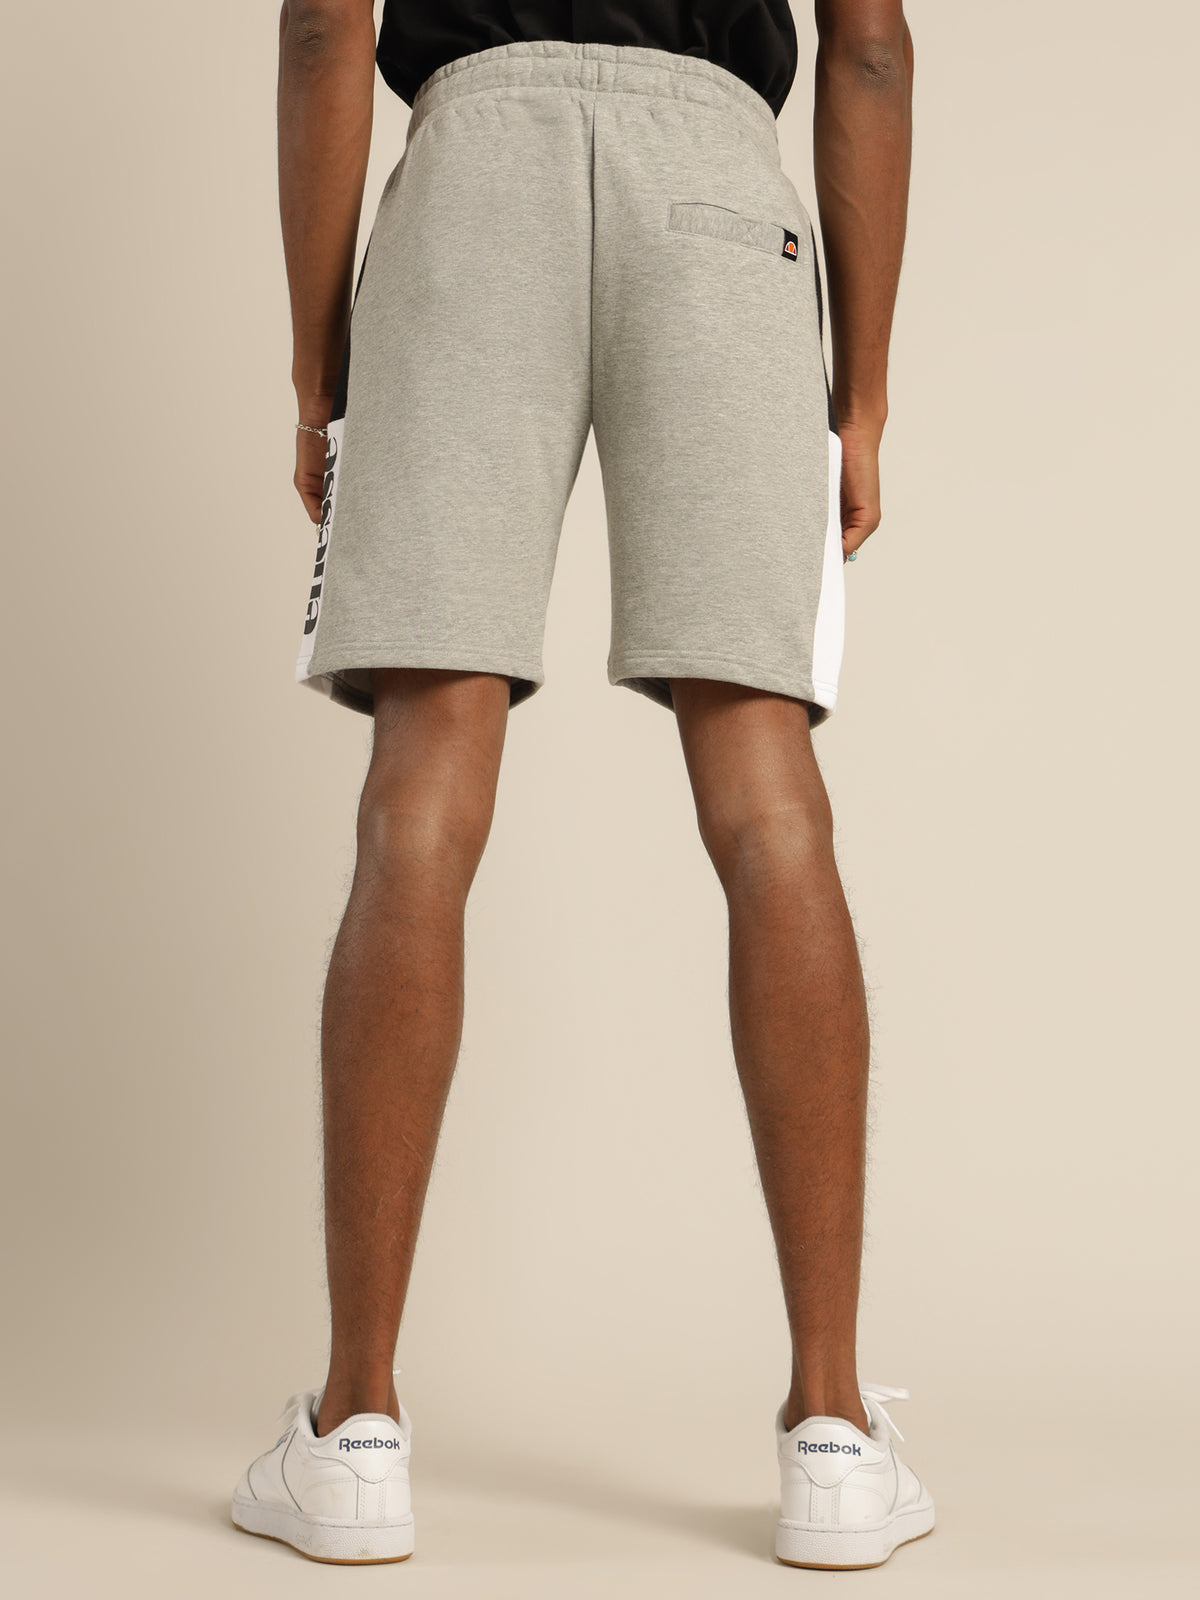 Bratani Shorts in Grey Marle